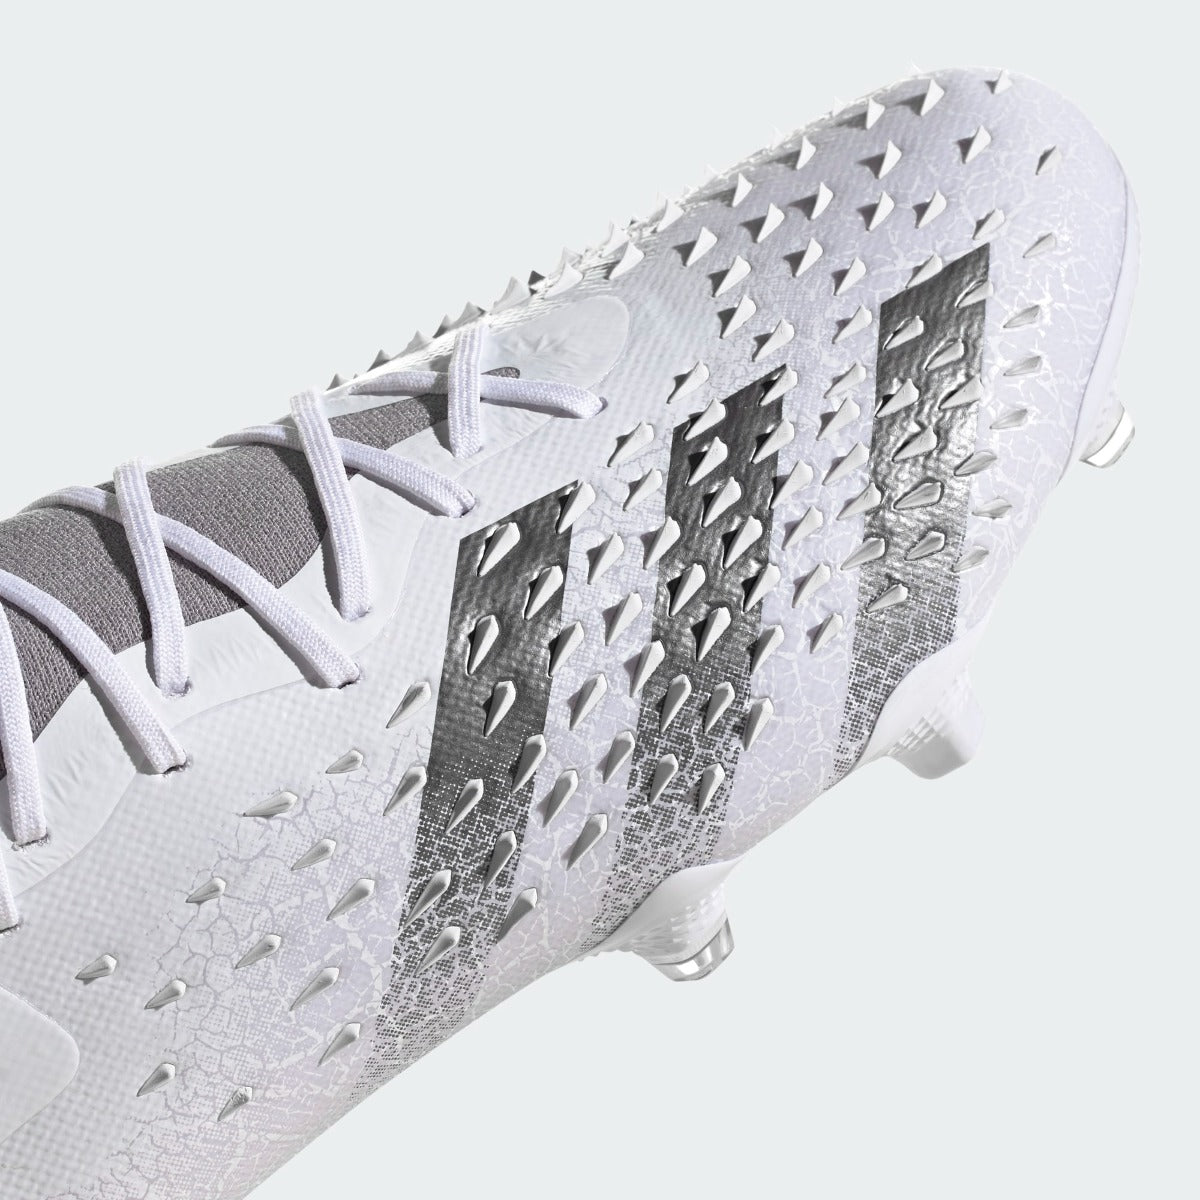 Adidas Predator Freak .1 FG -White-Iron Metallic (Detail 1)